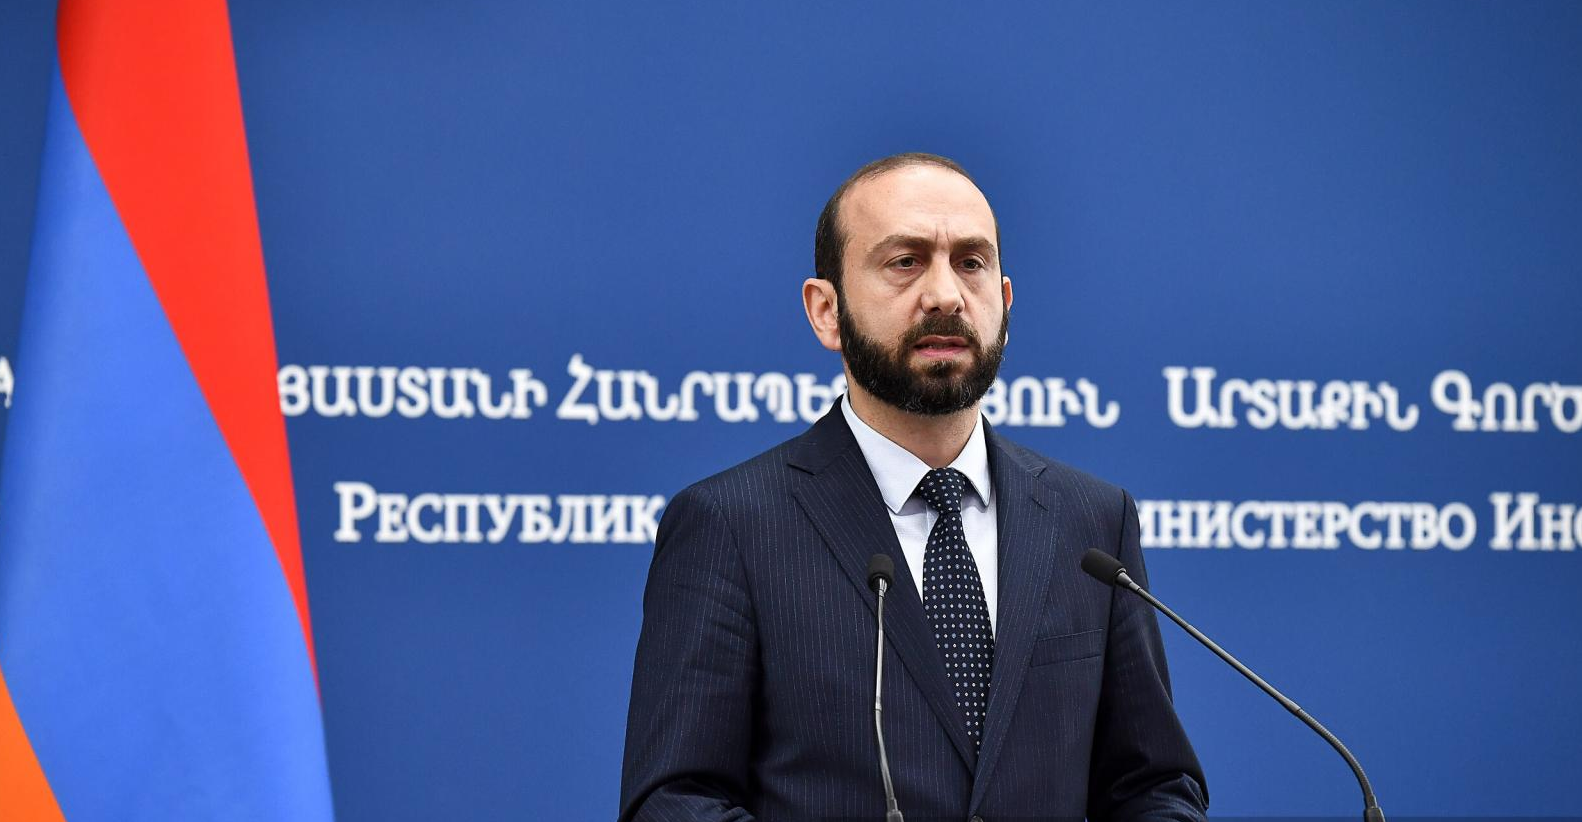 Ararat Mirzoyan։ Ermenistan Avrupa Birliği ile ortaklığını derinleştiriyor